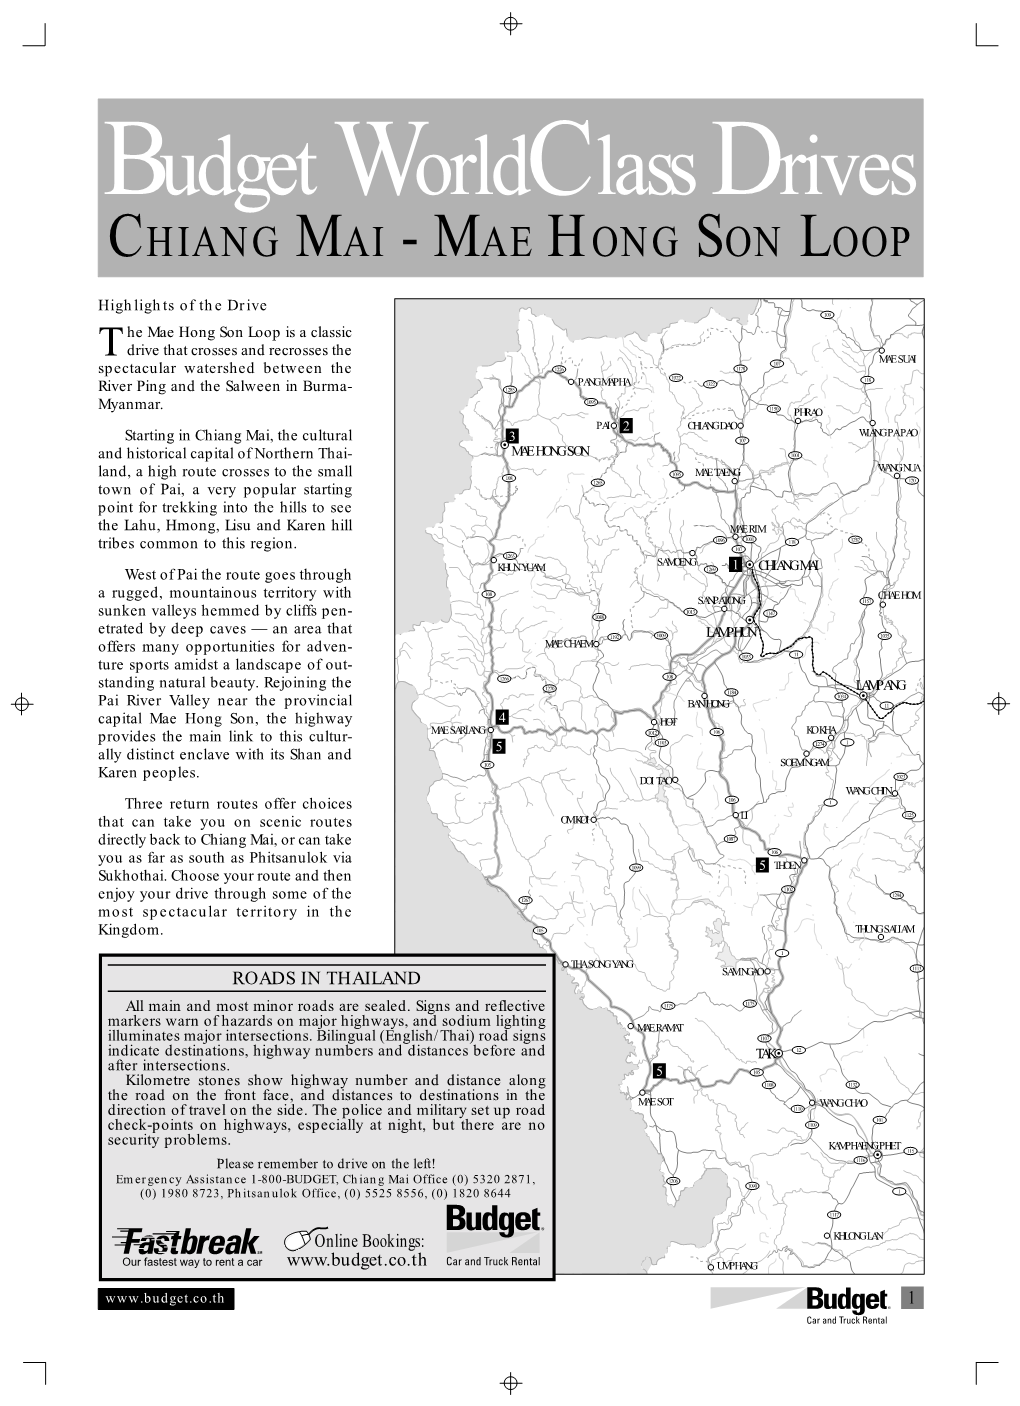 Chiang Mai - Mae Hong Son Loop